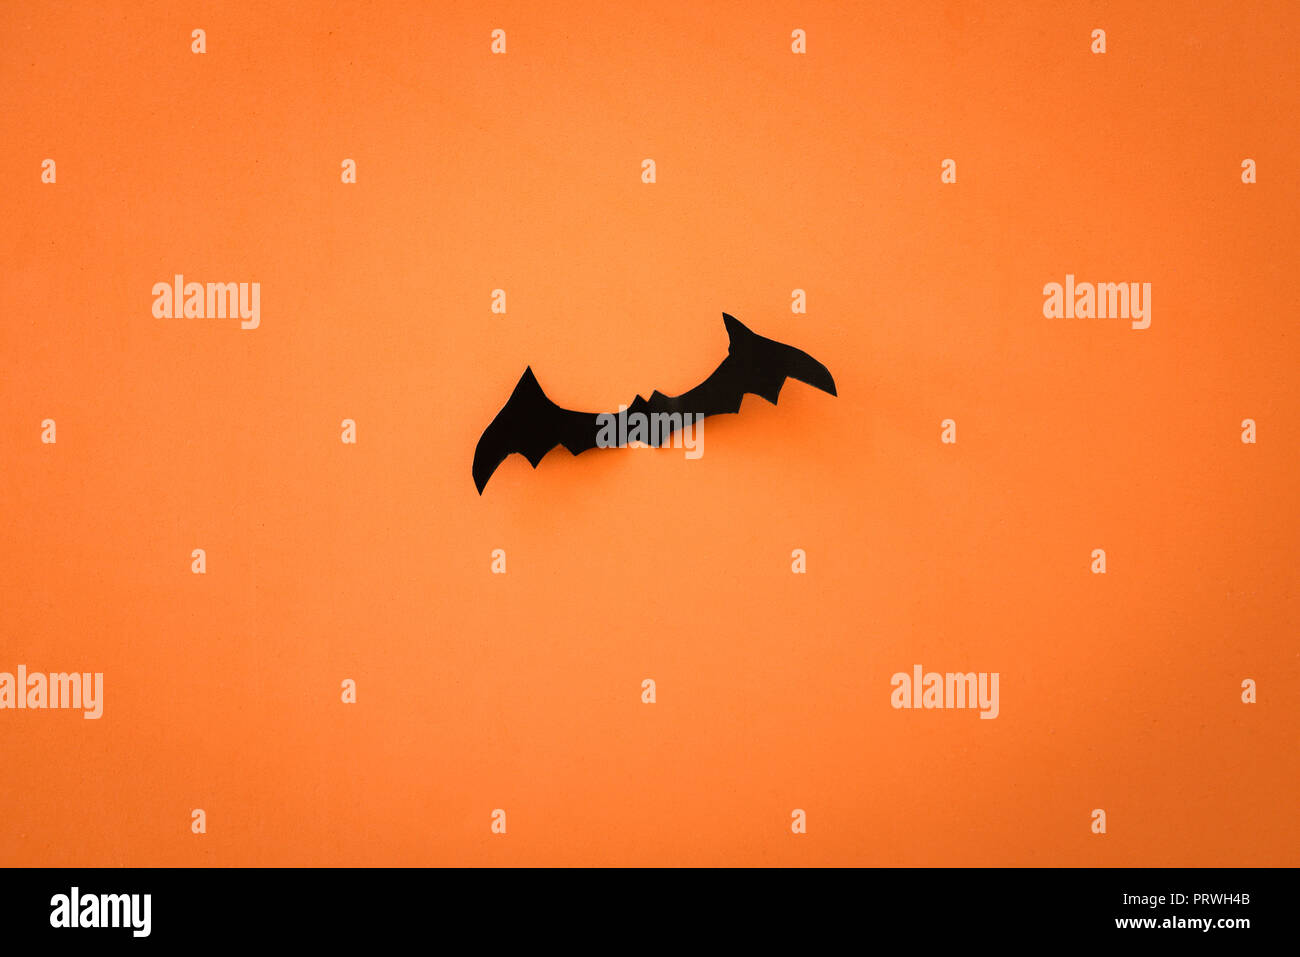 Flying schwarzes Papier Fledermäusen auf orangem Hintergrund. Halloween. Text Raum Stockfoto